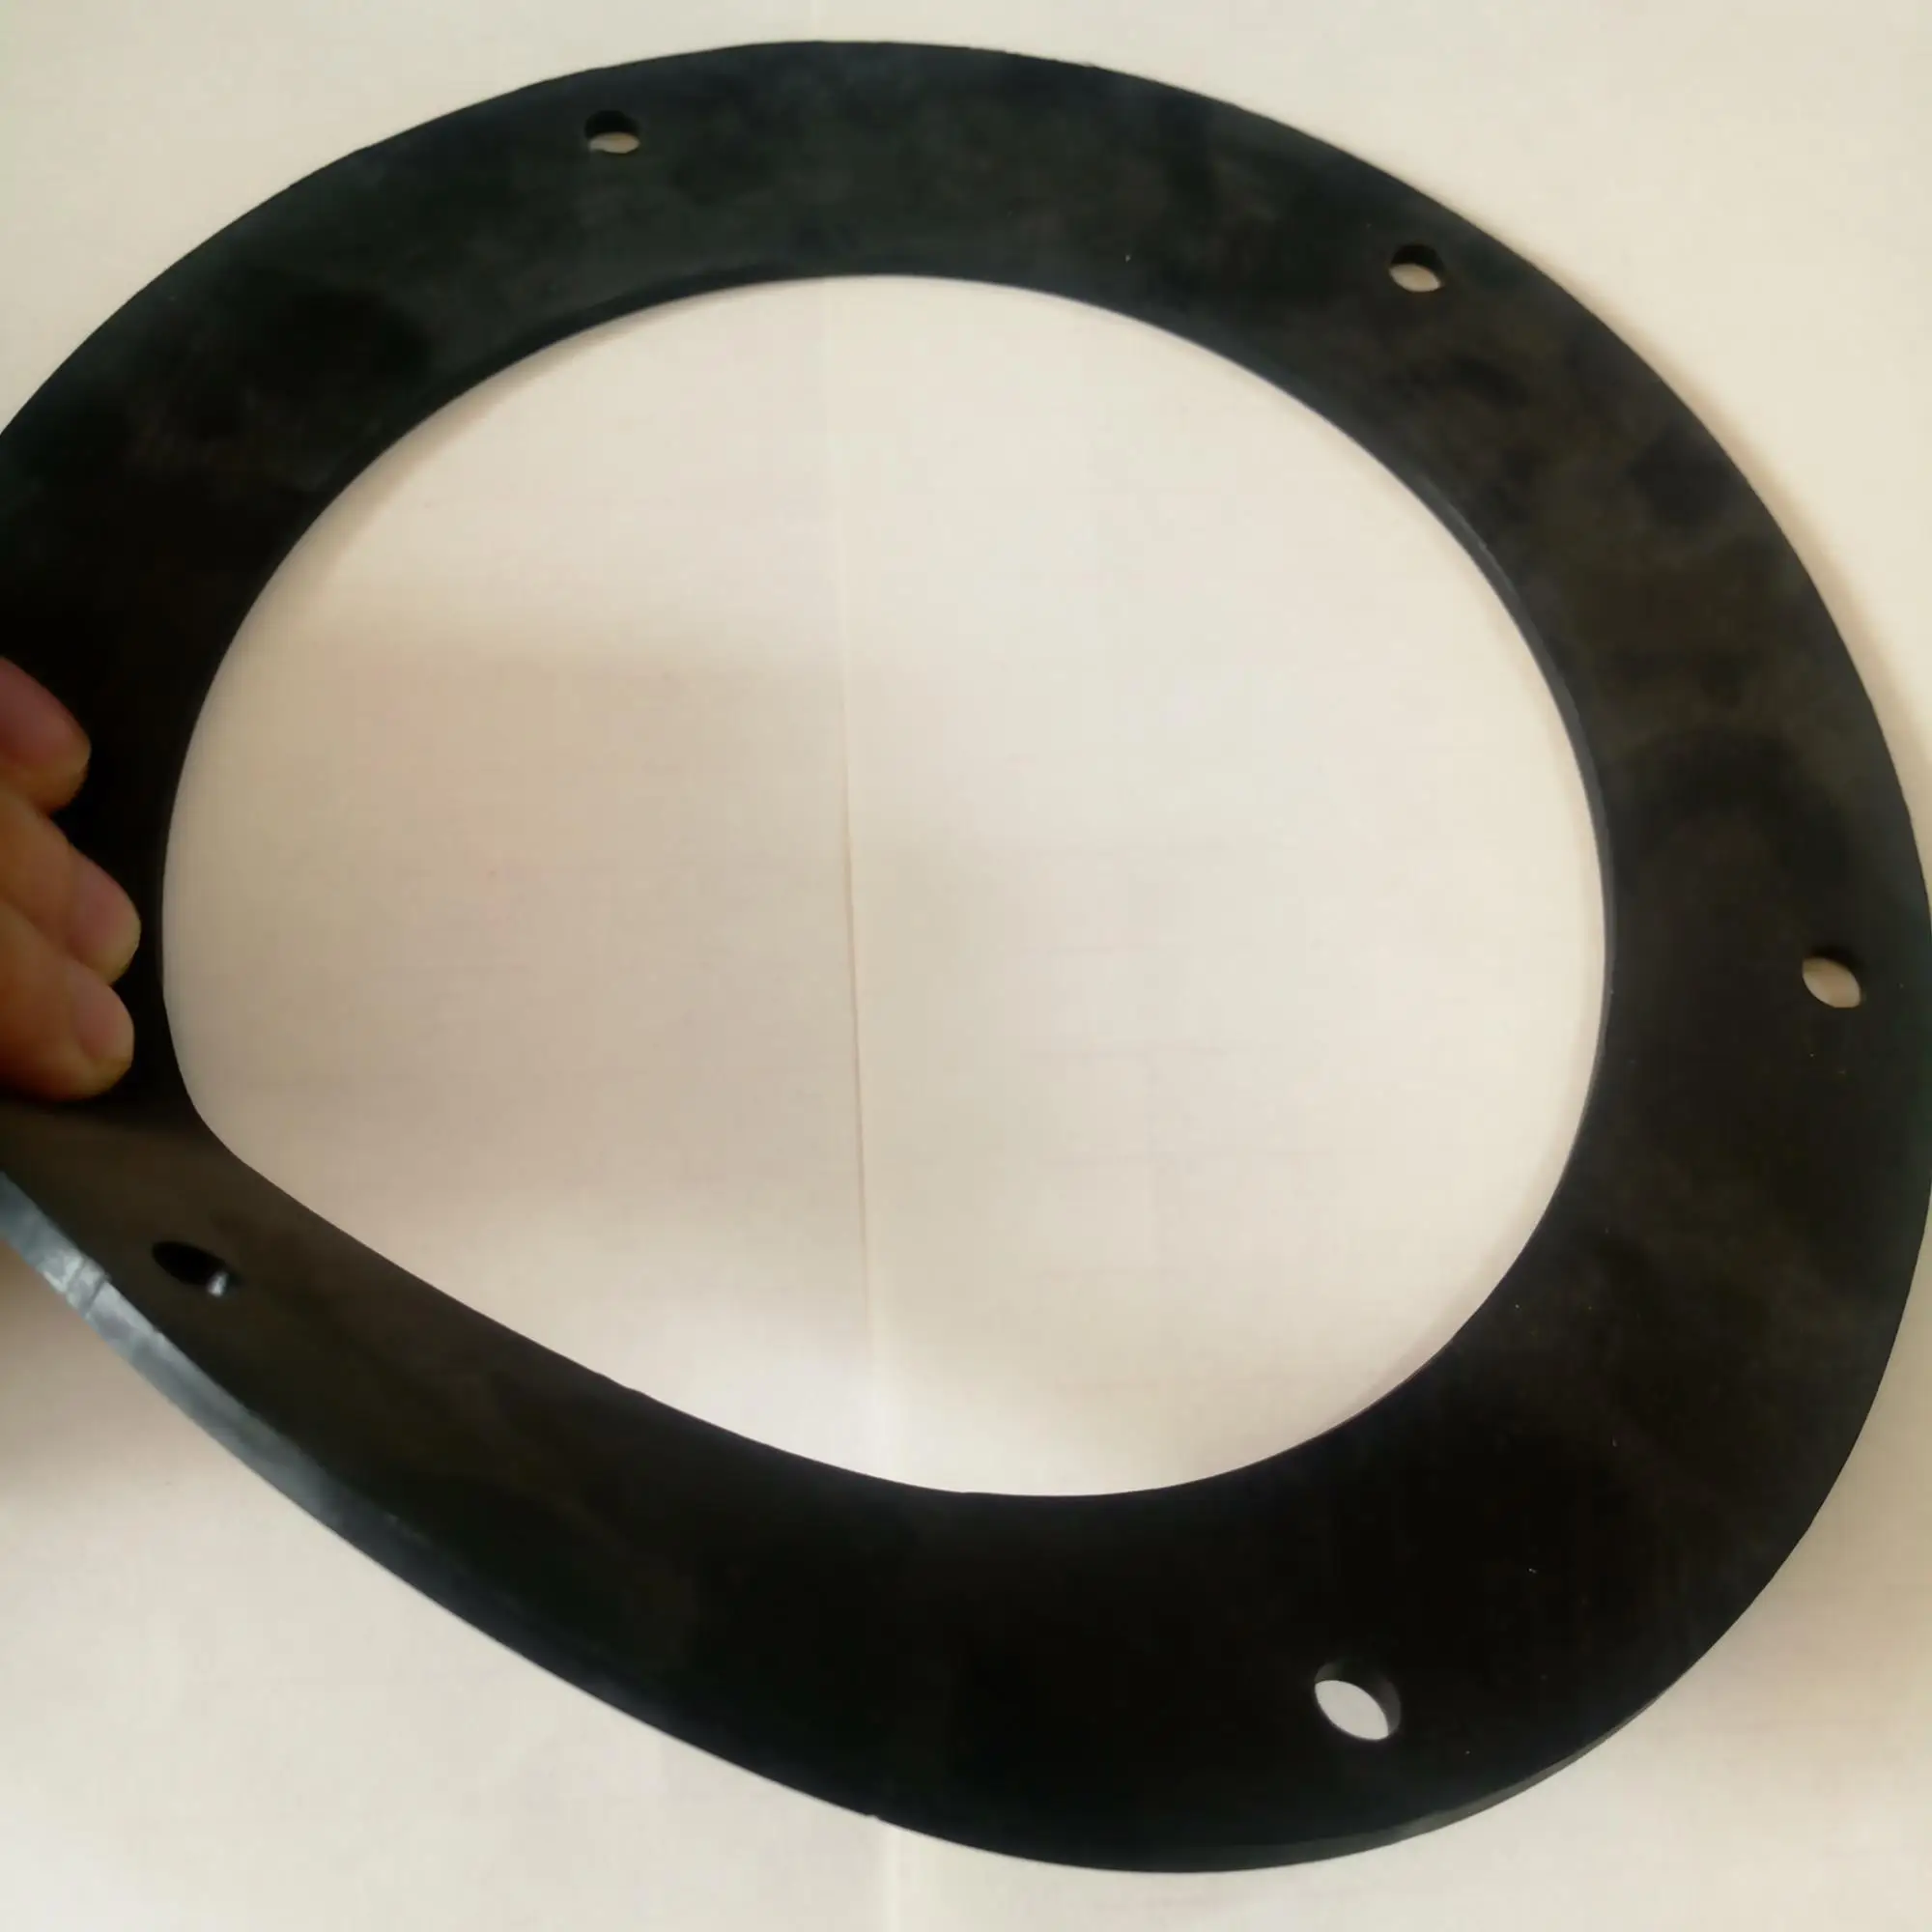 EPDM/SBR/NBR rubber flange gasket for sealing